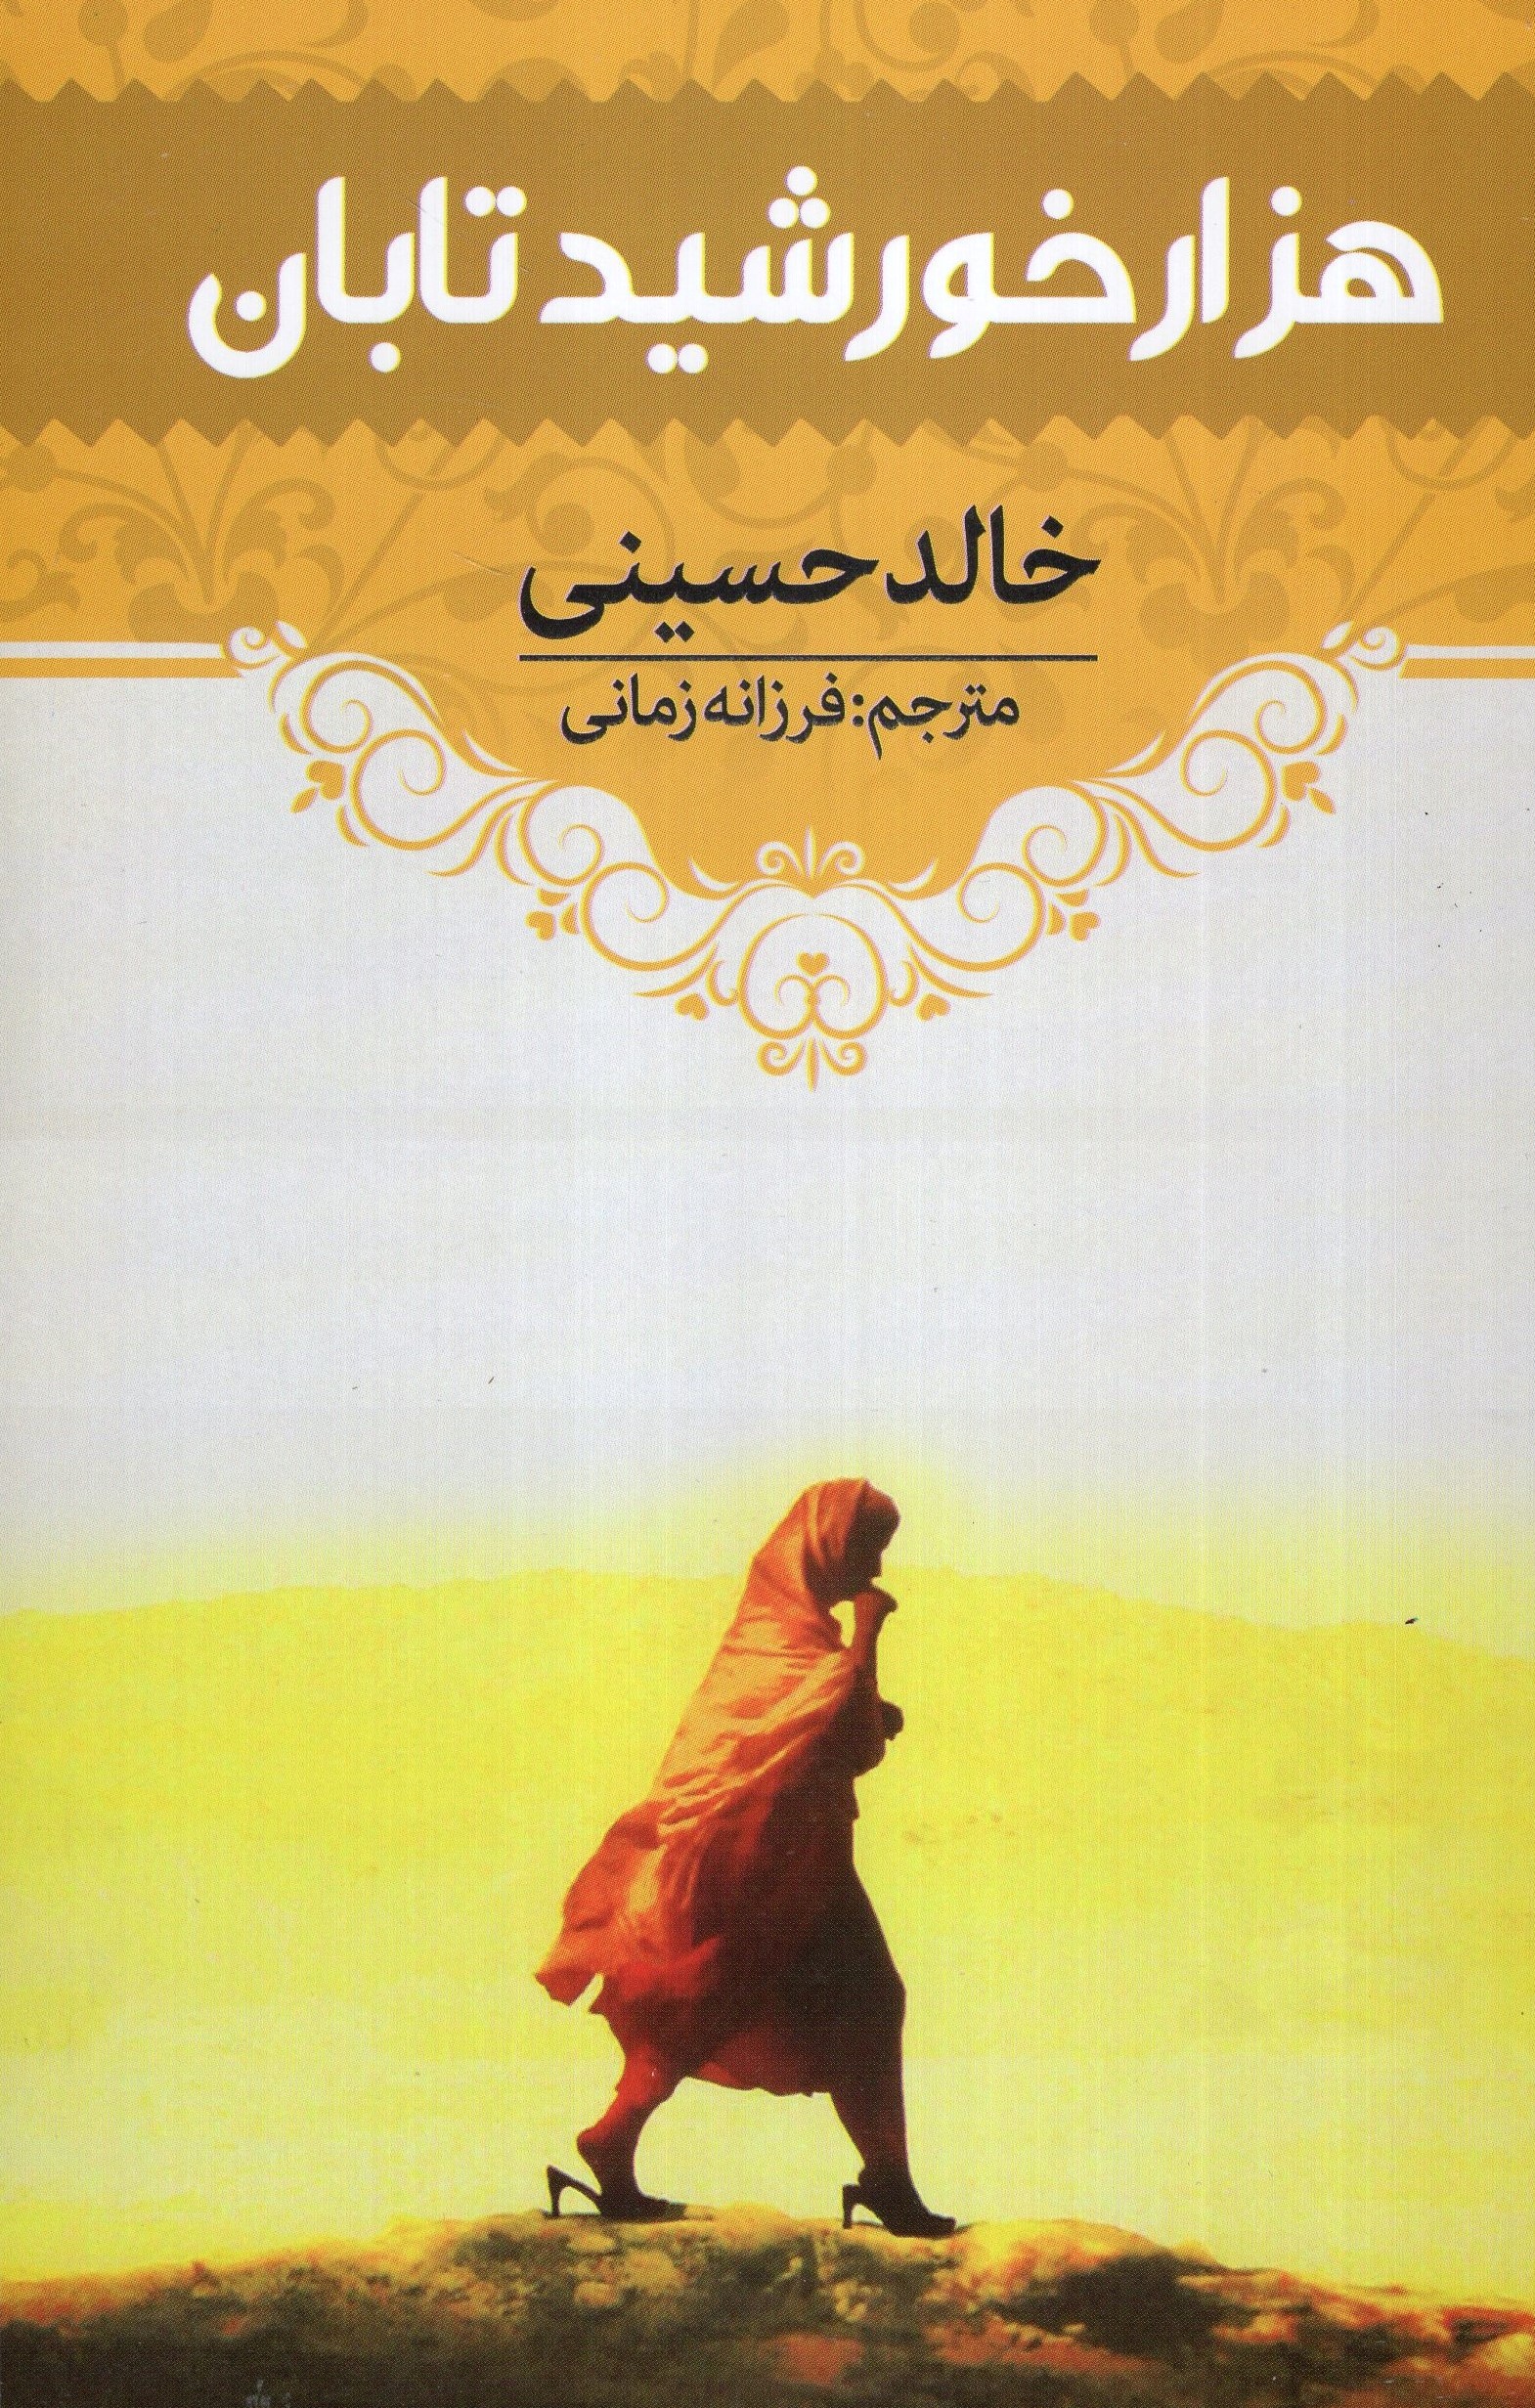 هزار خورشید تابان خالد حسینی(آراستگان)